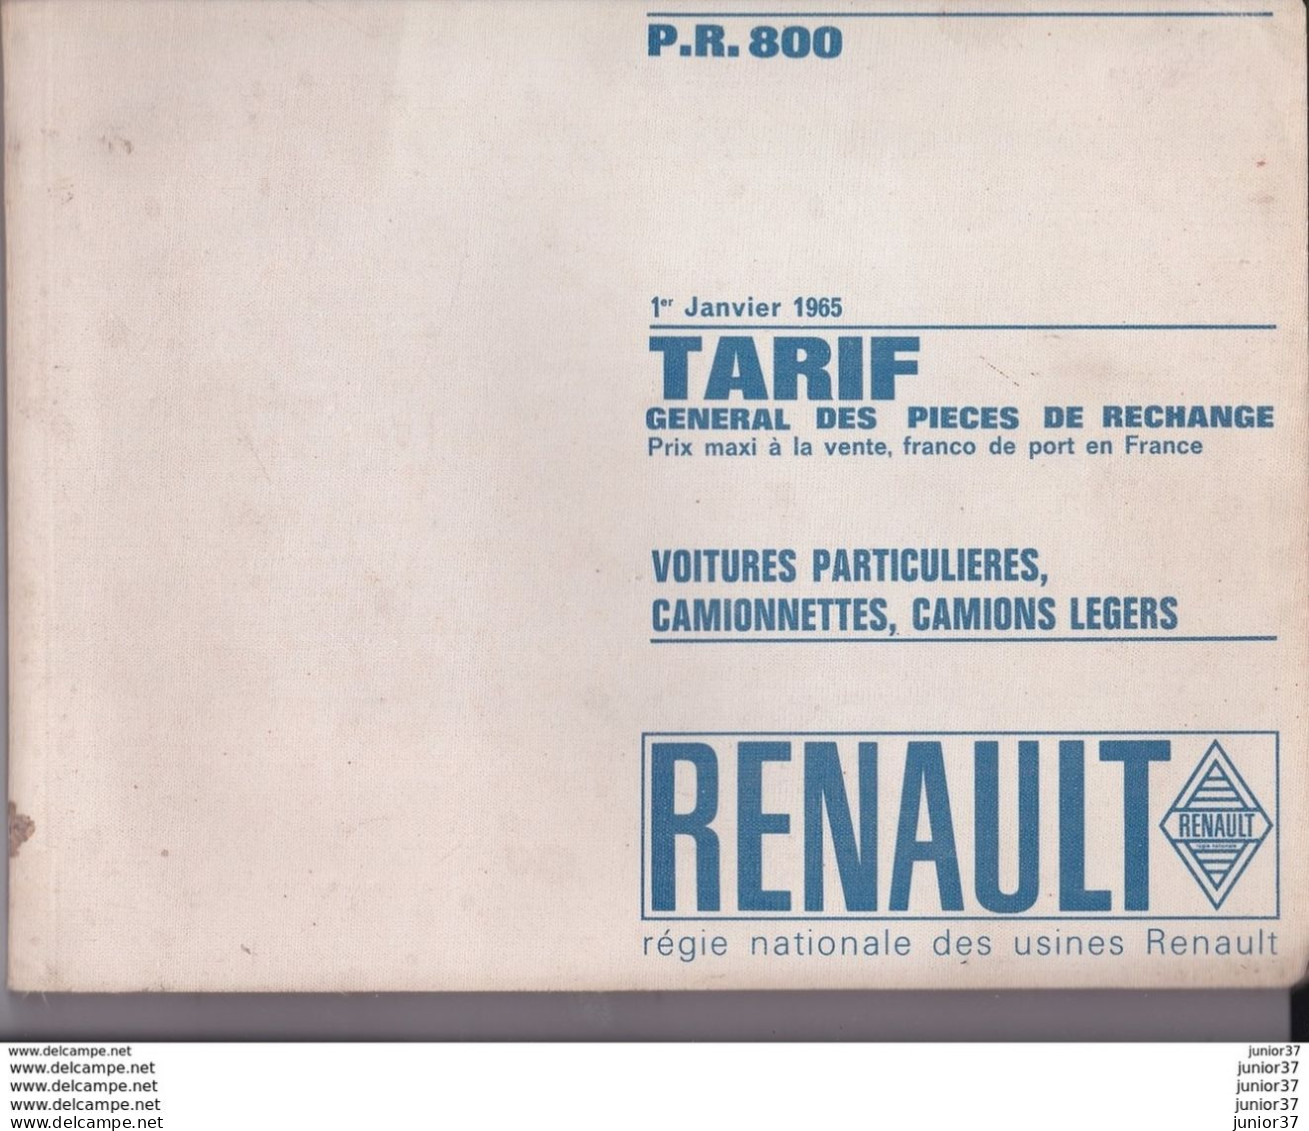 Livre Tarif Général Des Pièces De Rechange RENAULT Janvier 1965 P.R 800 + Additif Correctif P.R 800 Juillet 1965 - Cars